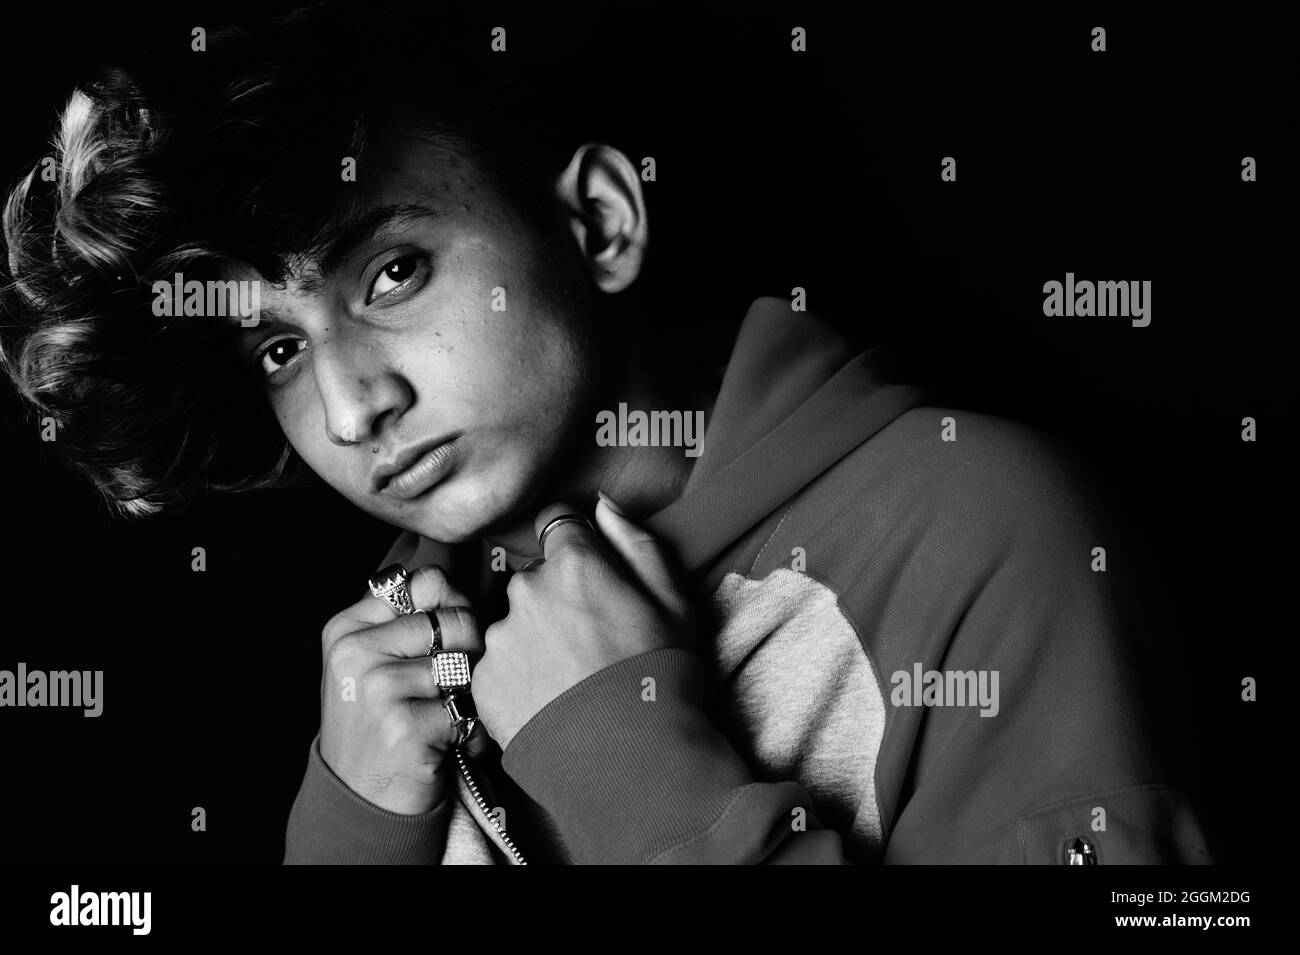 Photo en niveaux de gris d'un jeune Indien portant un sweat à capuche Banque D'Images